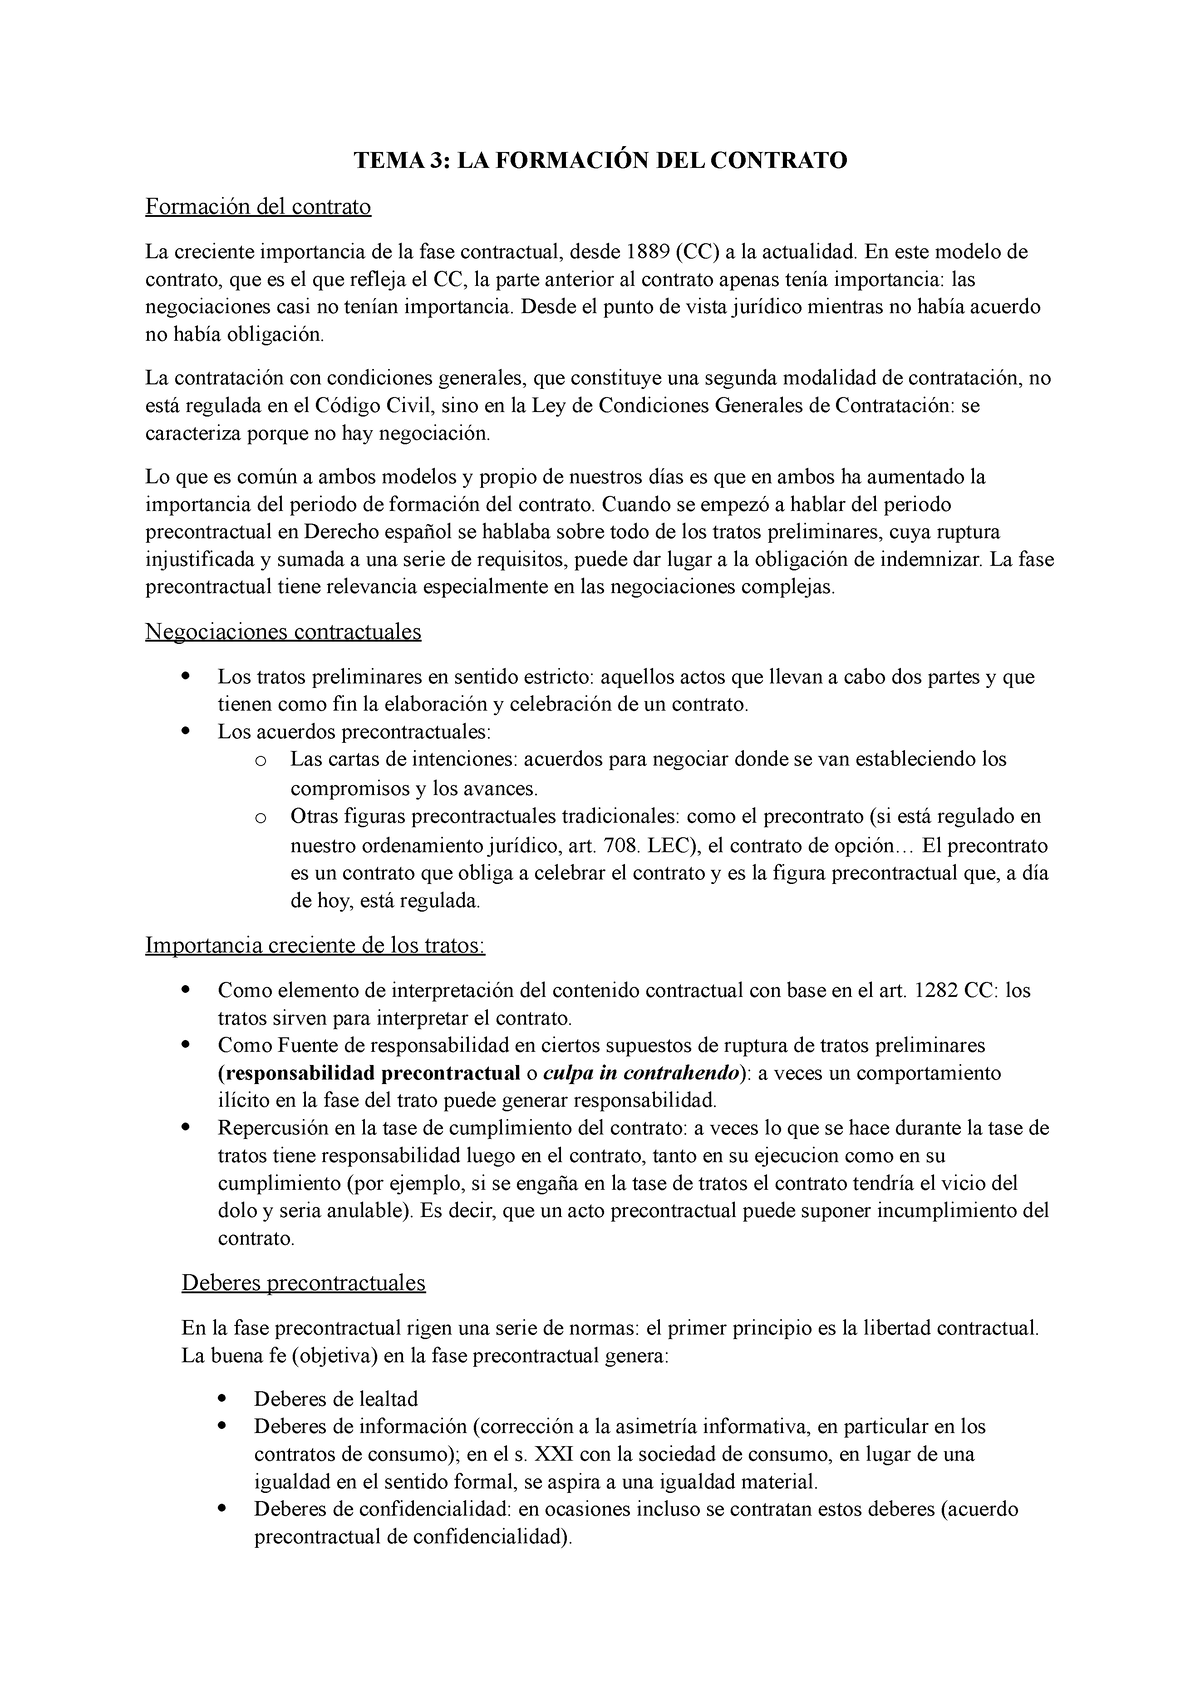 Contratos Tema 3 Tema 3 La FormaciÓn Del Contrato Formación Del Contrato La Creciente 6902